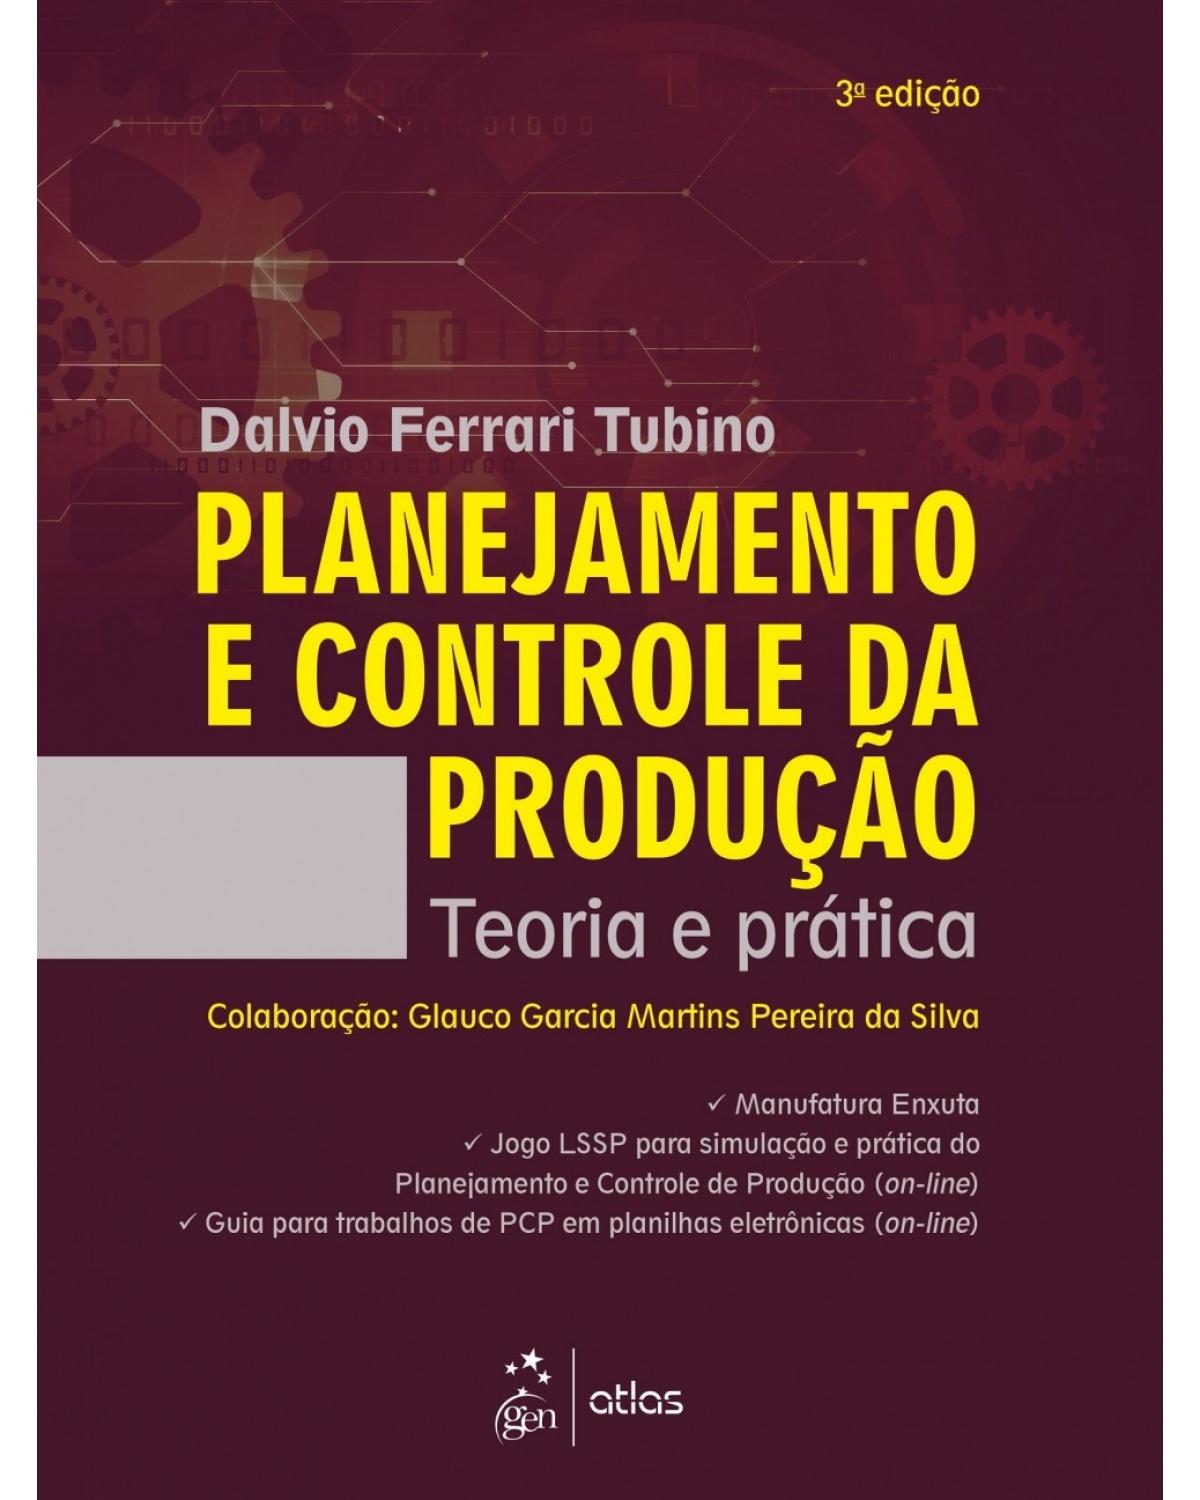 Planejamento e controle da produção - Teoria e prática - 3ª Edição | 2017